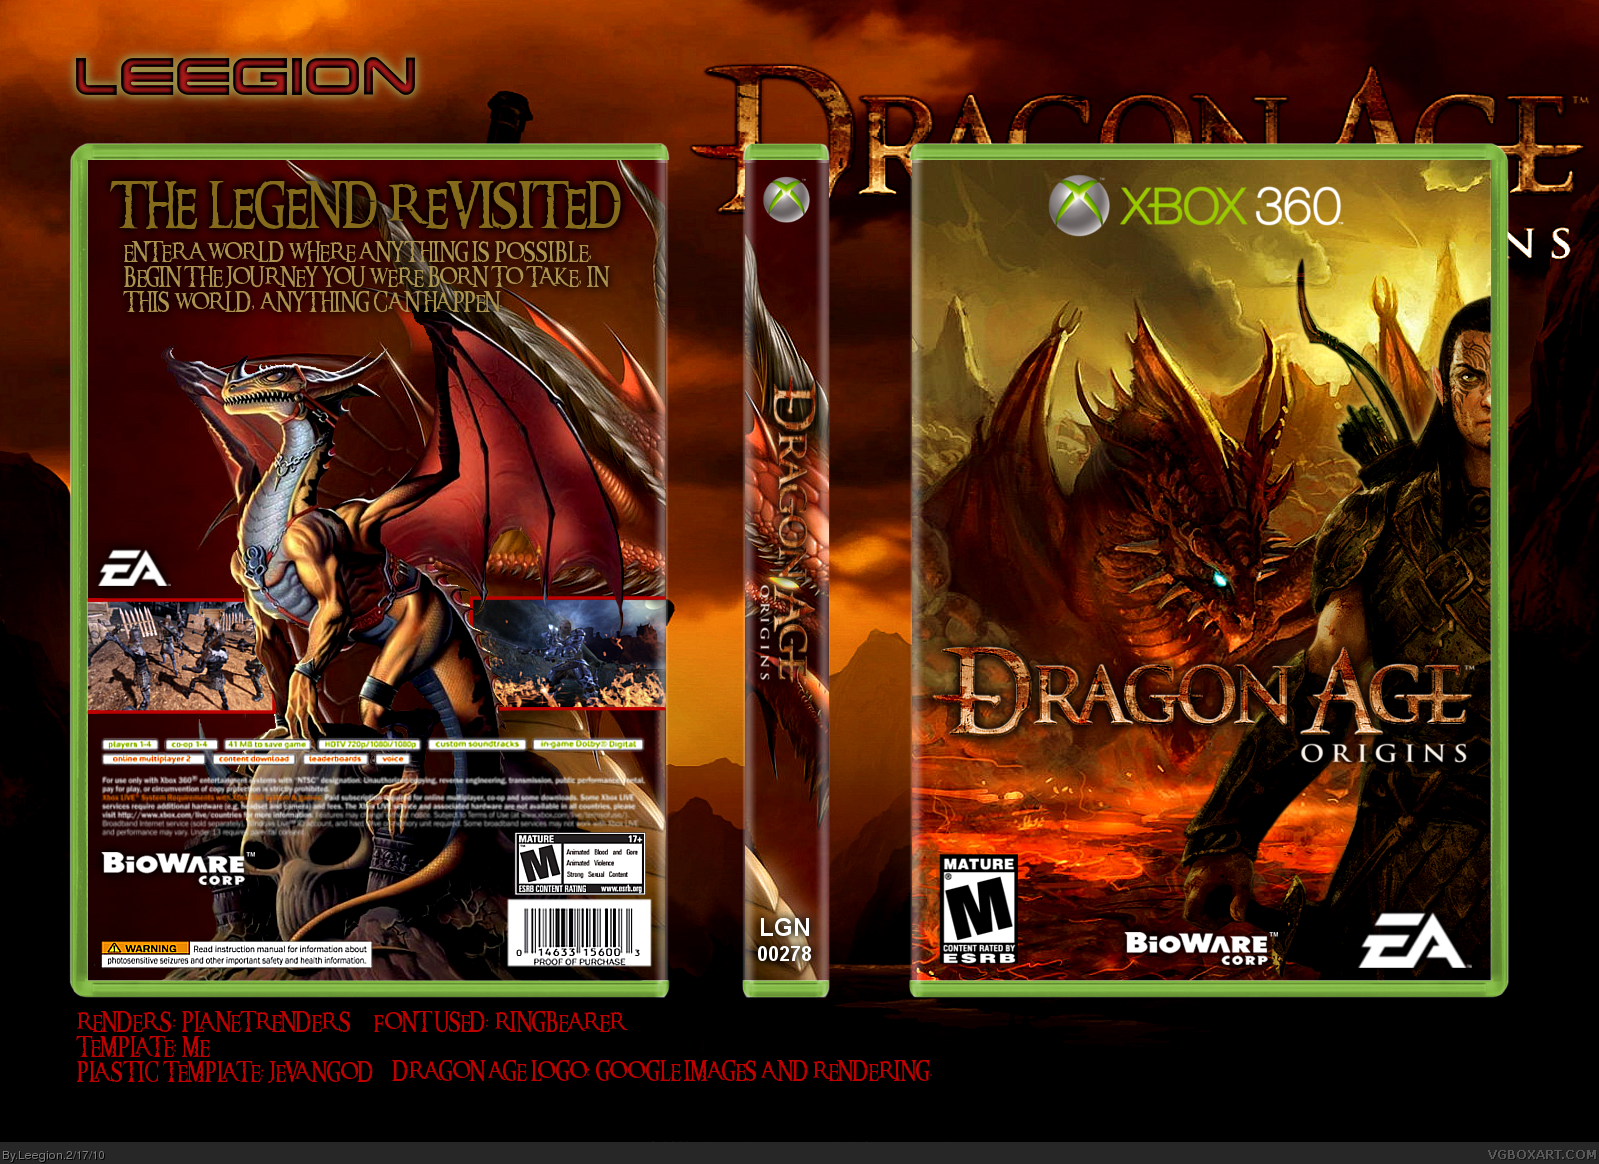 Dragon Age: Origins box cover